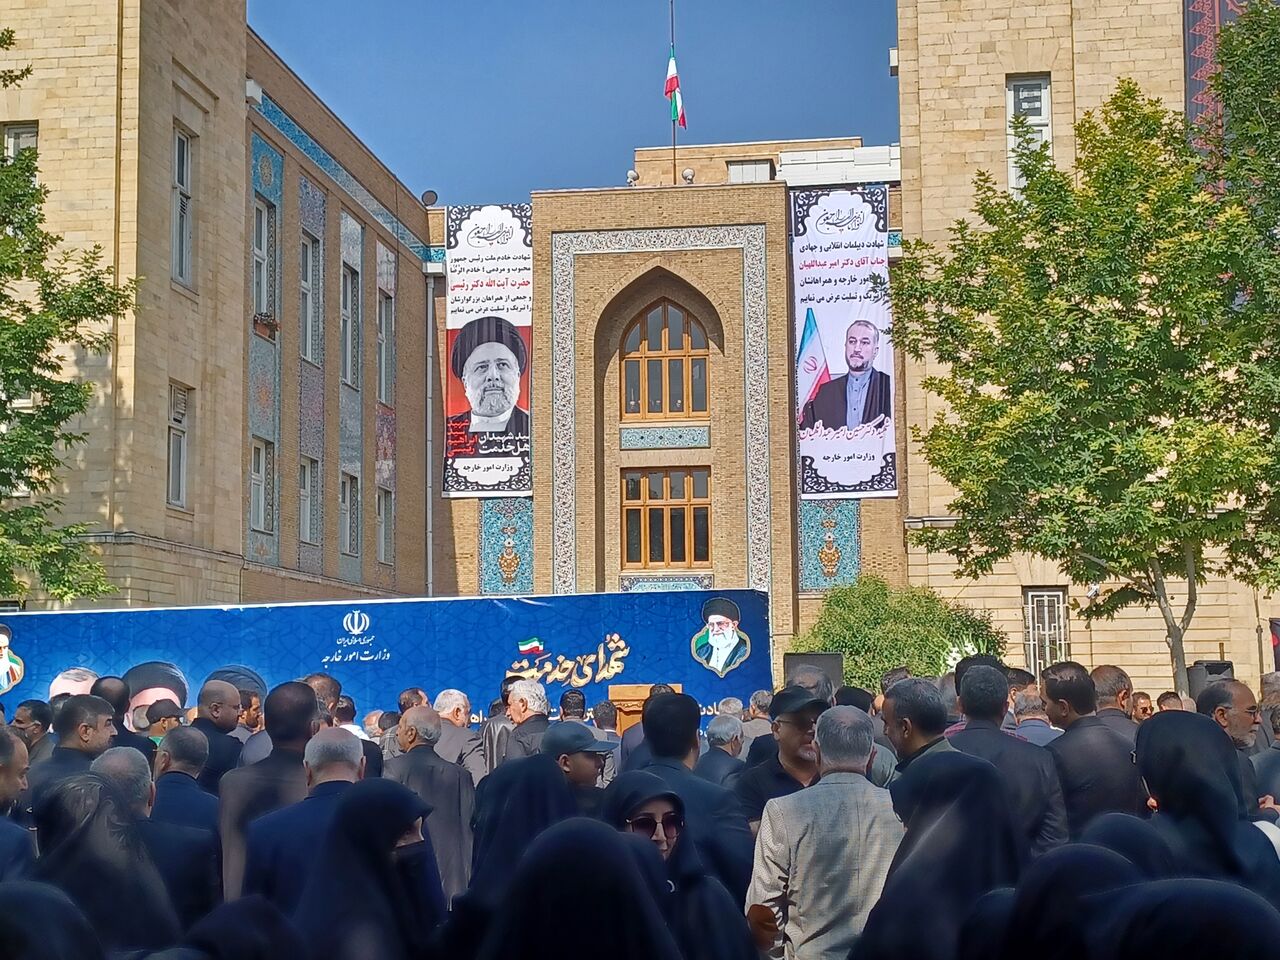  وزارت خارجہ میں، شہید وزیر خارجہ کی تشیع جنازہ کا آغاز  